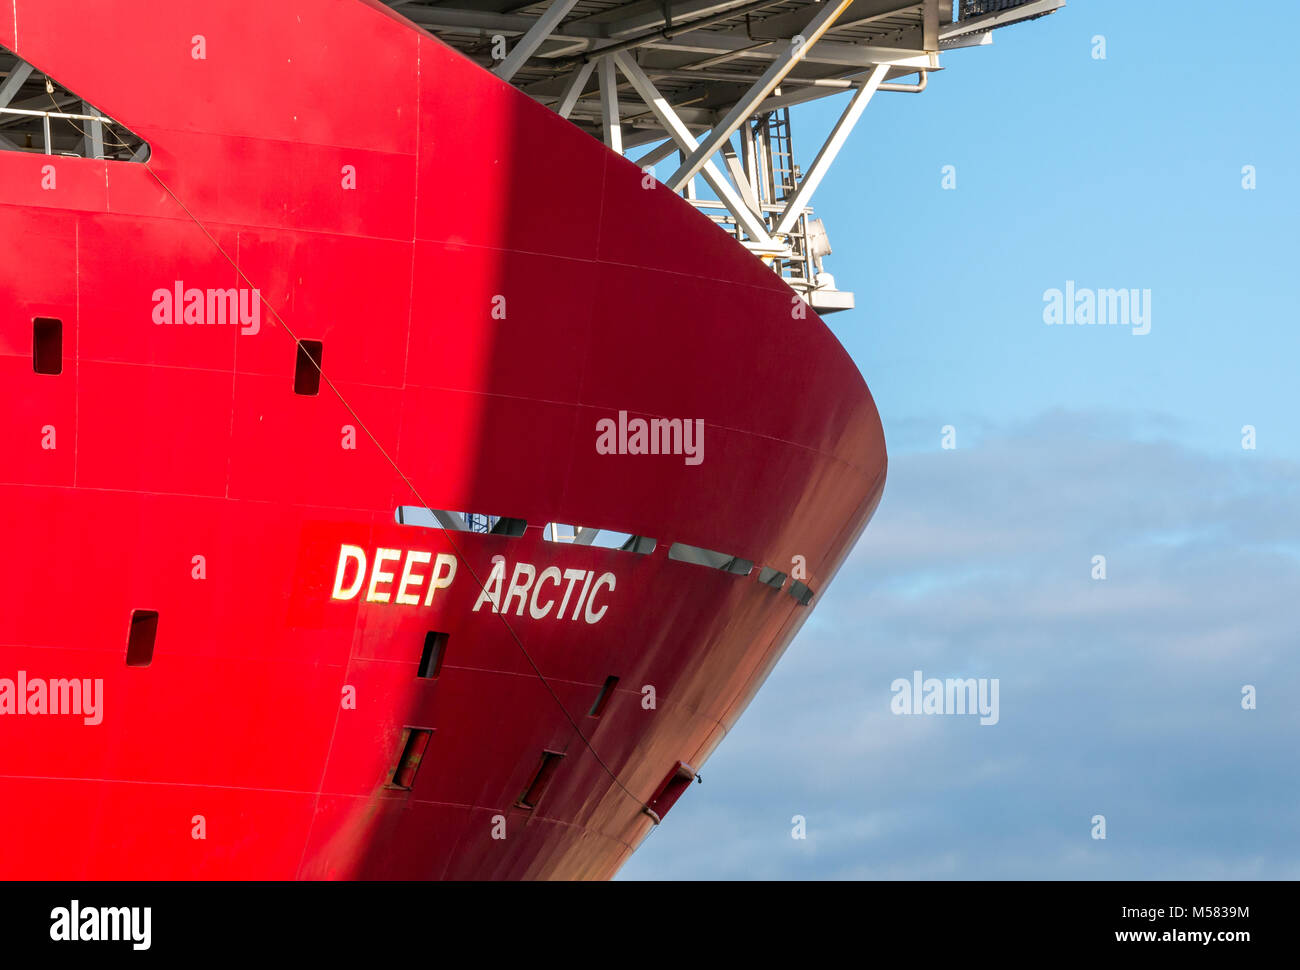 Bug von Technip Schiff, tiefen arktischen, Tauchen und schweren Bau support Schiff, Leith Harbour, Edinburgh, Schottland, Großbritannien Stockfoto